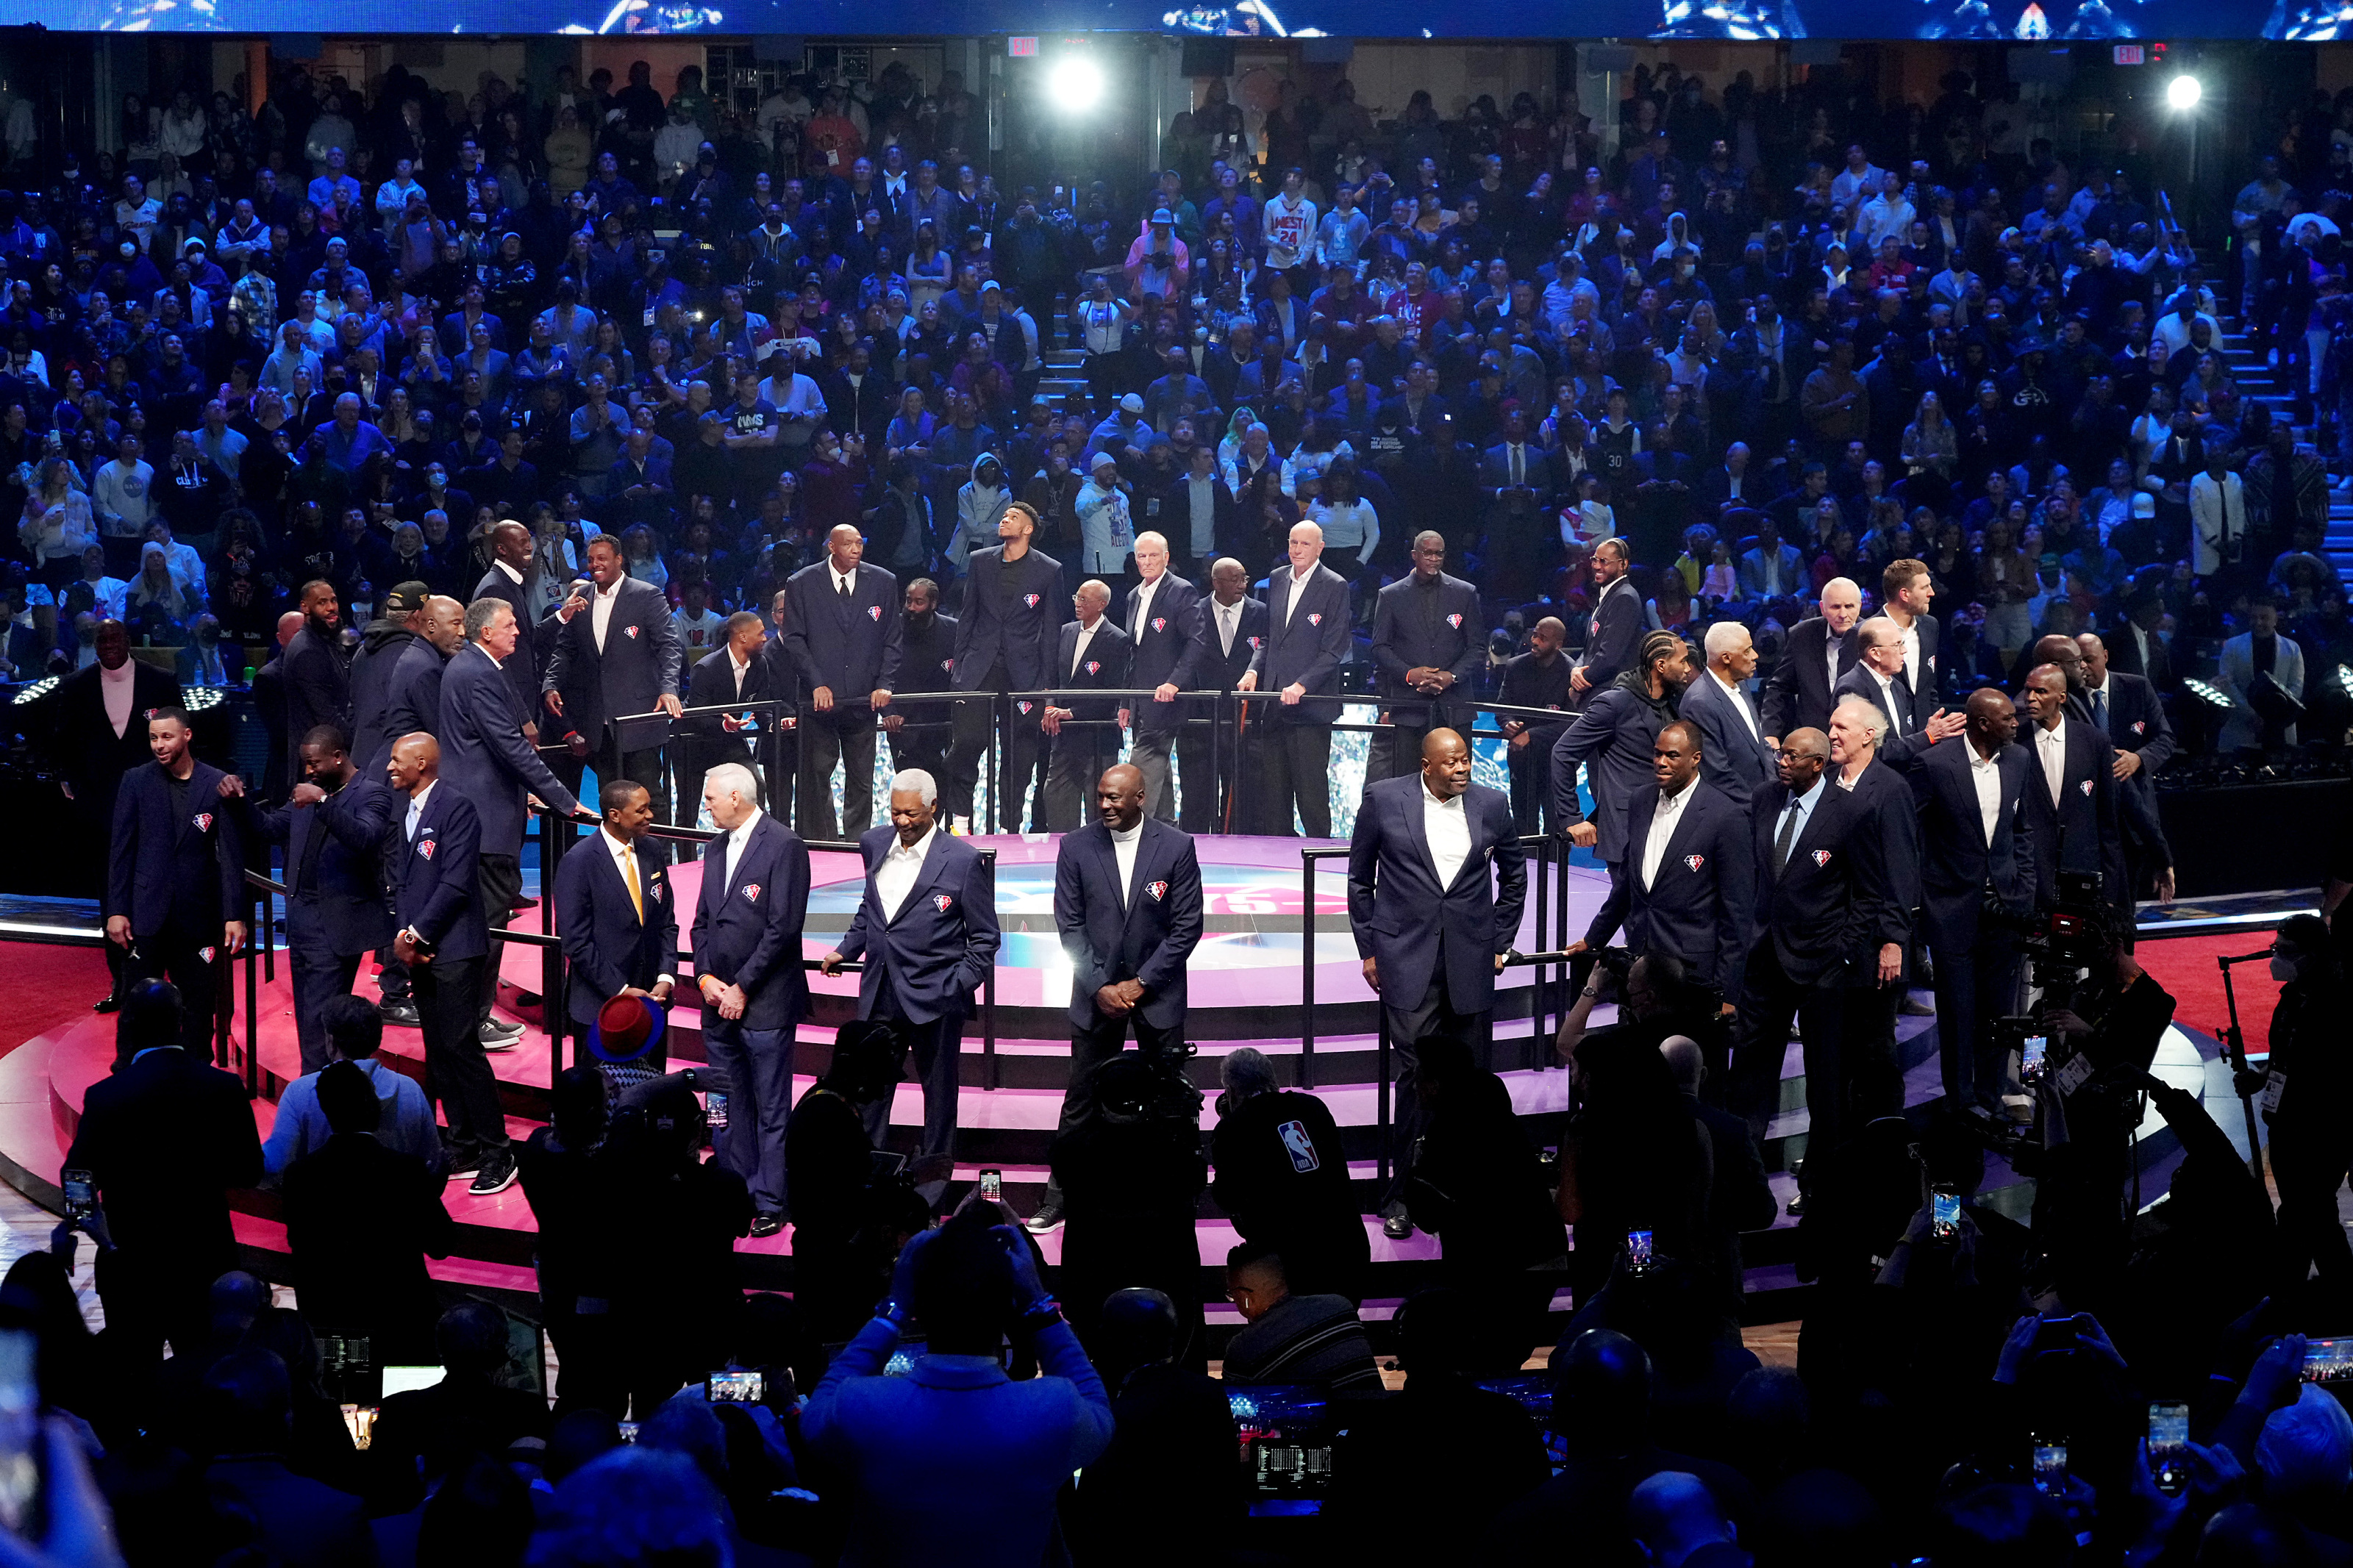 NBA 75th Anniversary Team announced